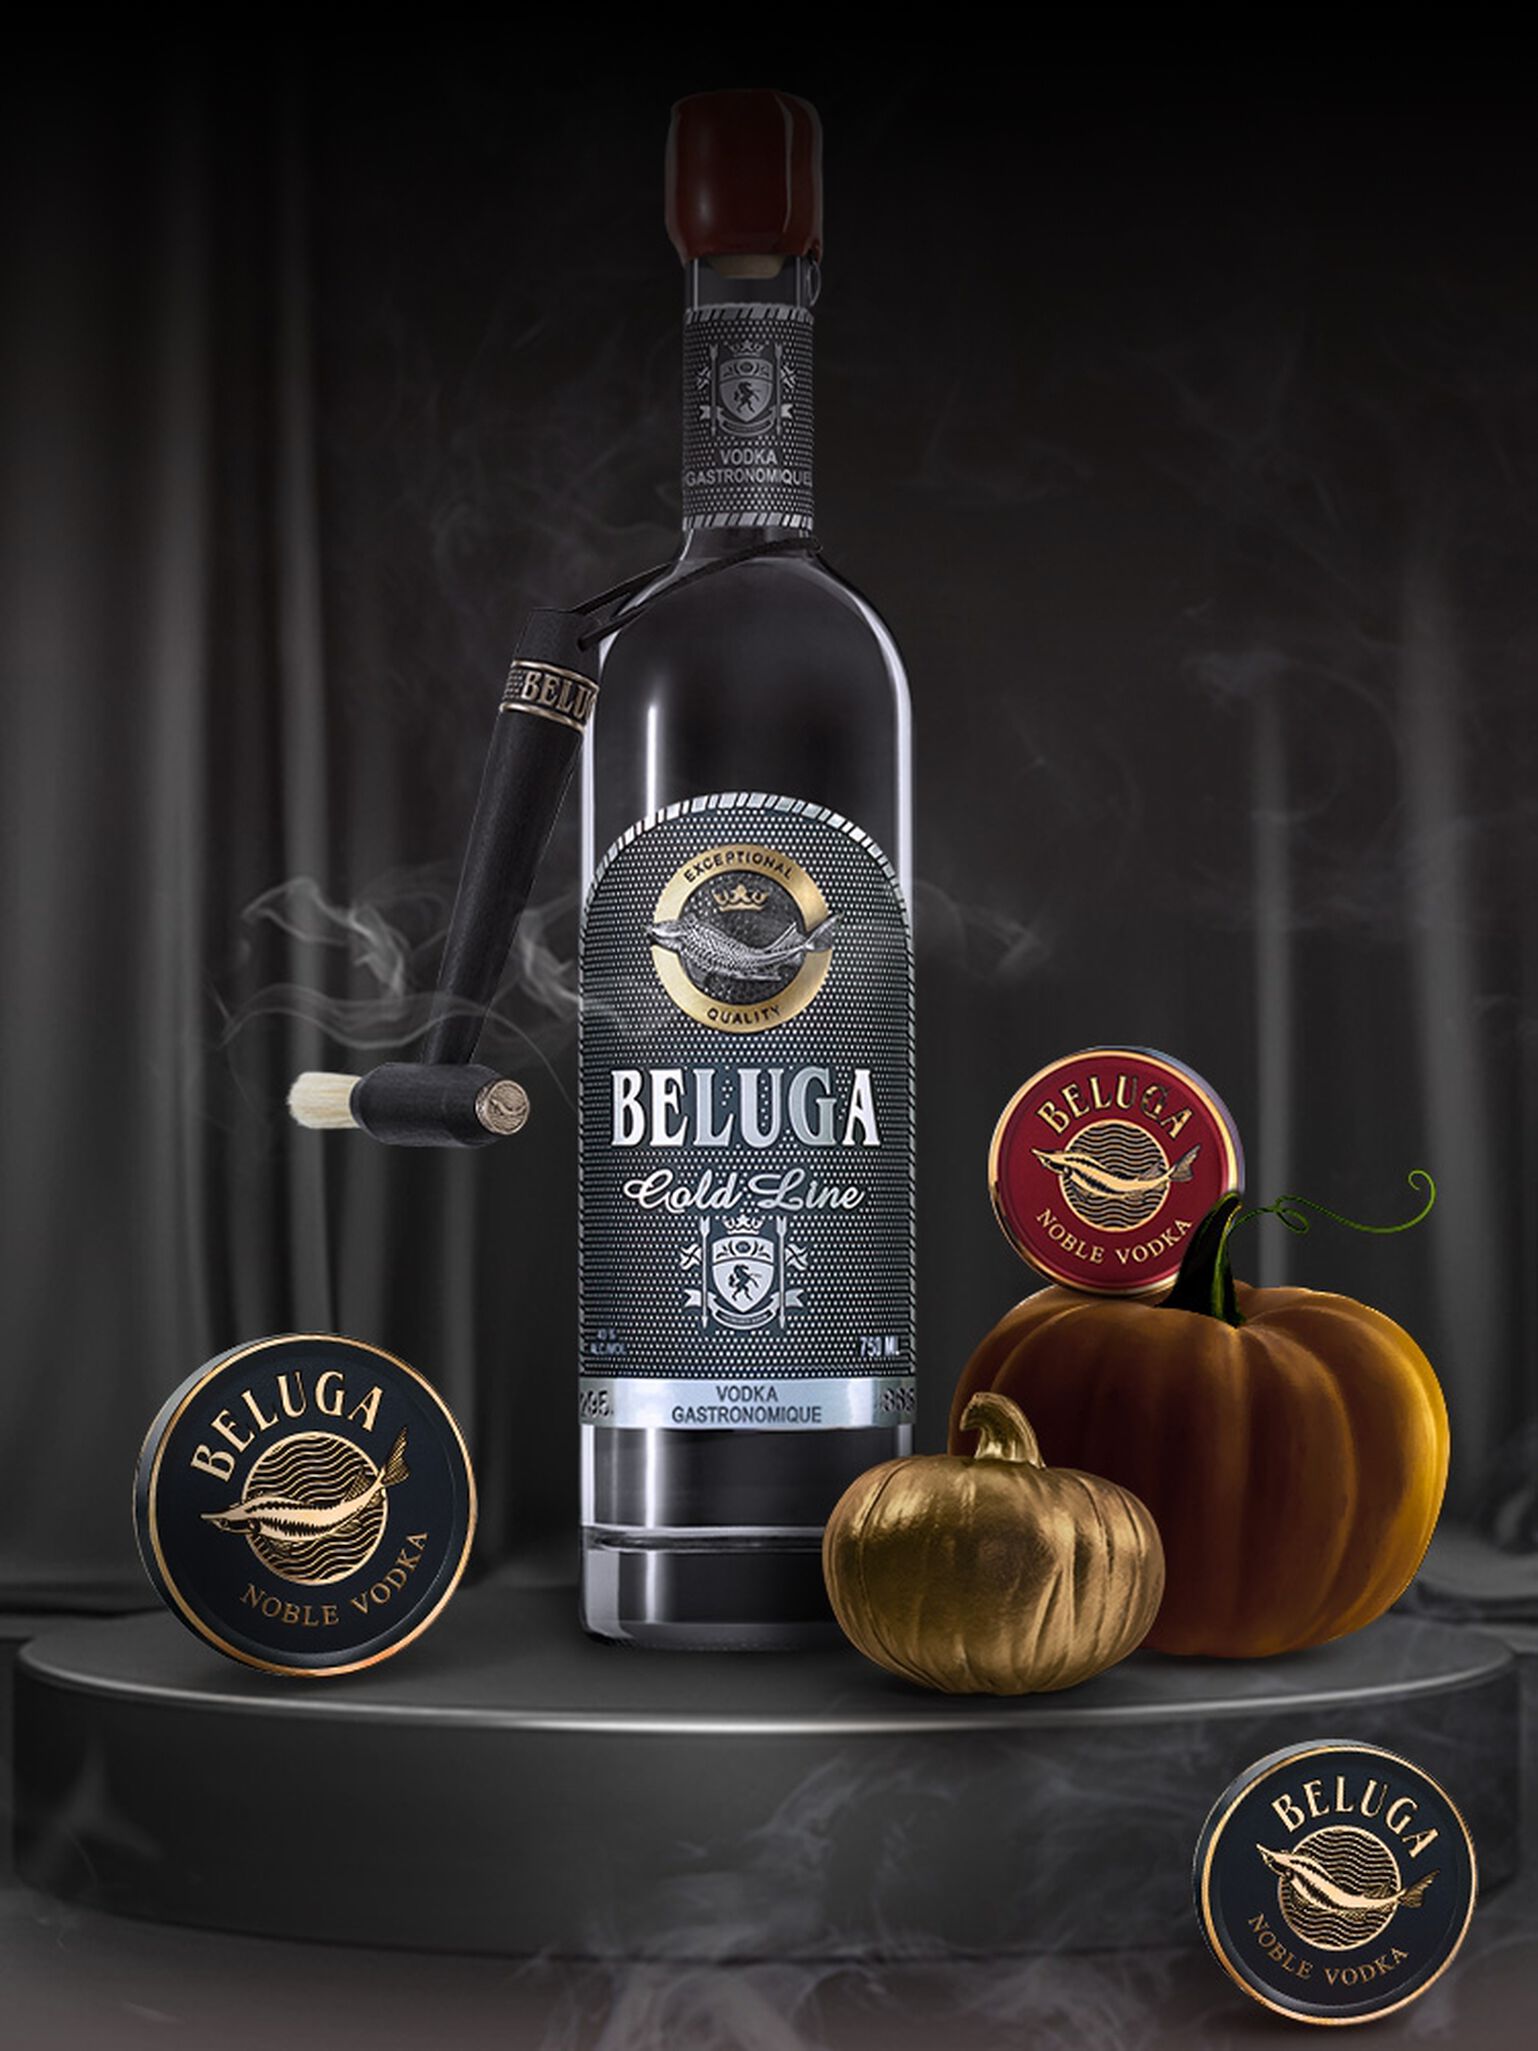 Bottle of Beluga Gold Line Vodka with Pumpkins and cocktails